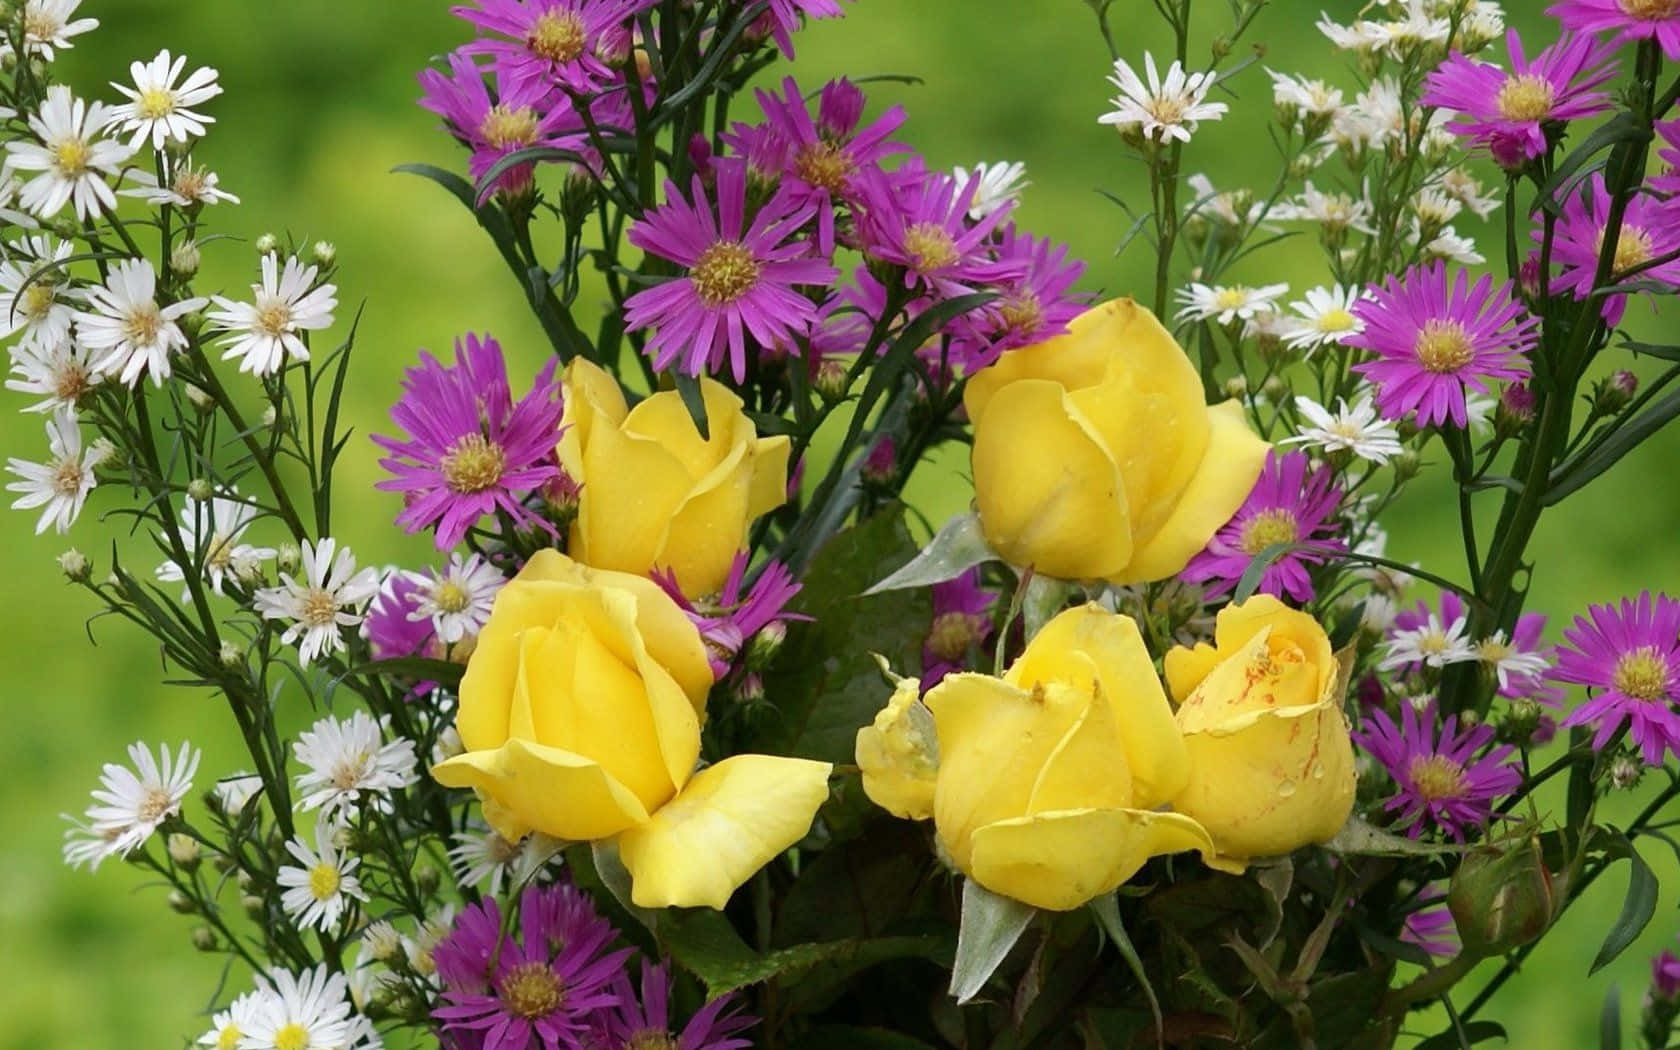 Gelberosen Und Lila Gänseblümchen In Einer Vase